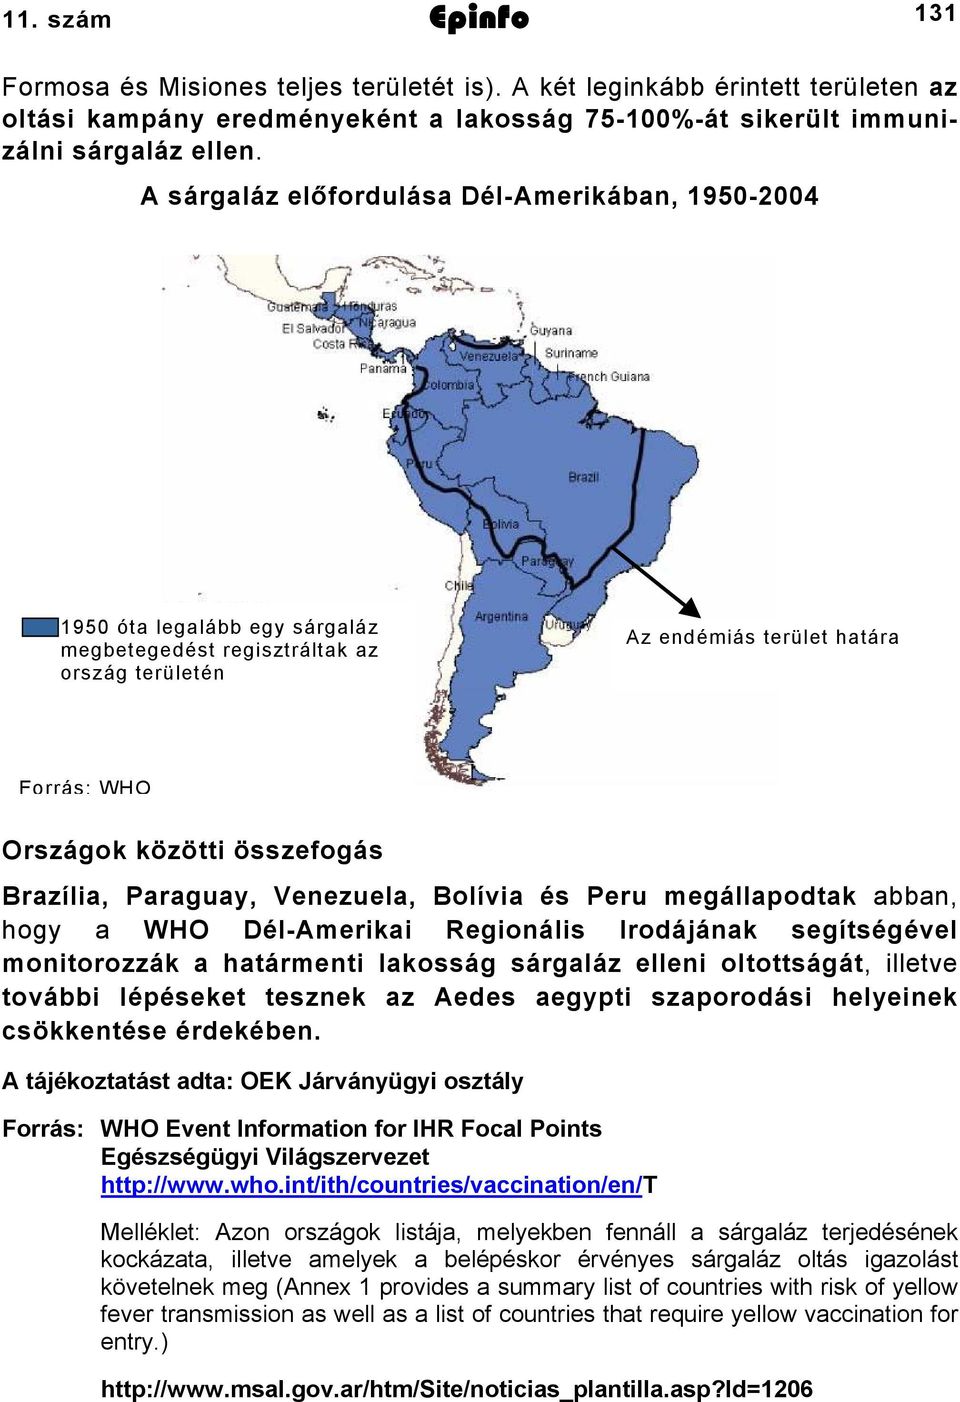 Brazília, Paraguay, Venezuela, Bolívia és Peru megállapodtak abban, hogy a WHO Dél-Amerikai Regionális Irodájának segítségével monitorozzák a határmenti lakosság sárgaláz elleni oltottságát, illetve